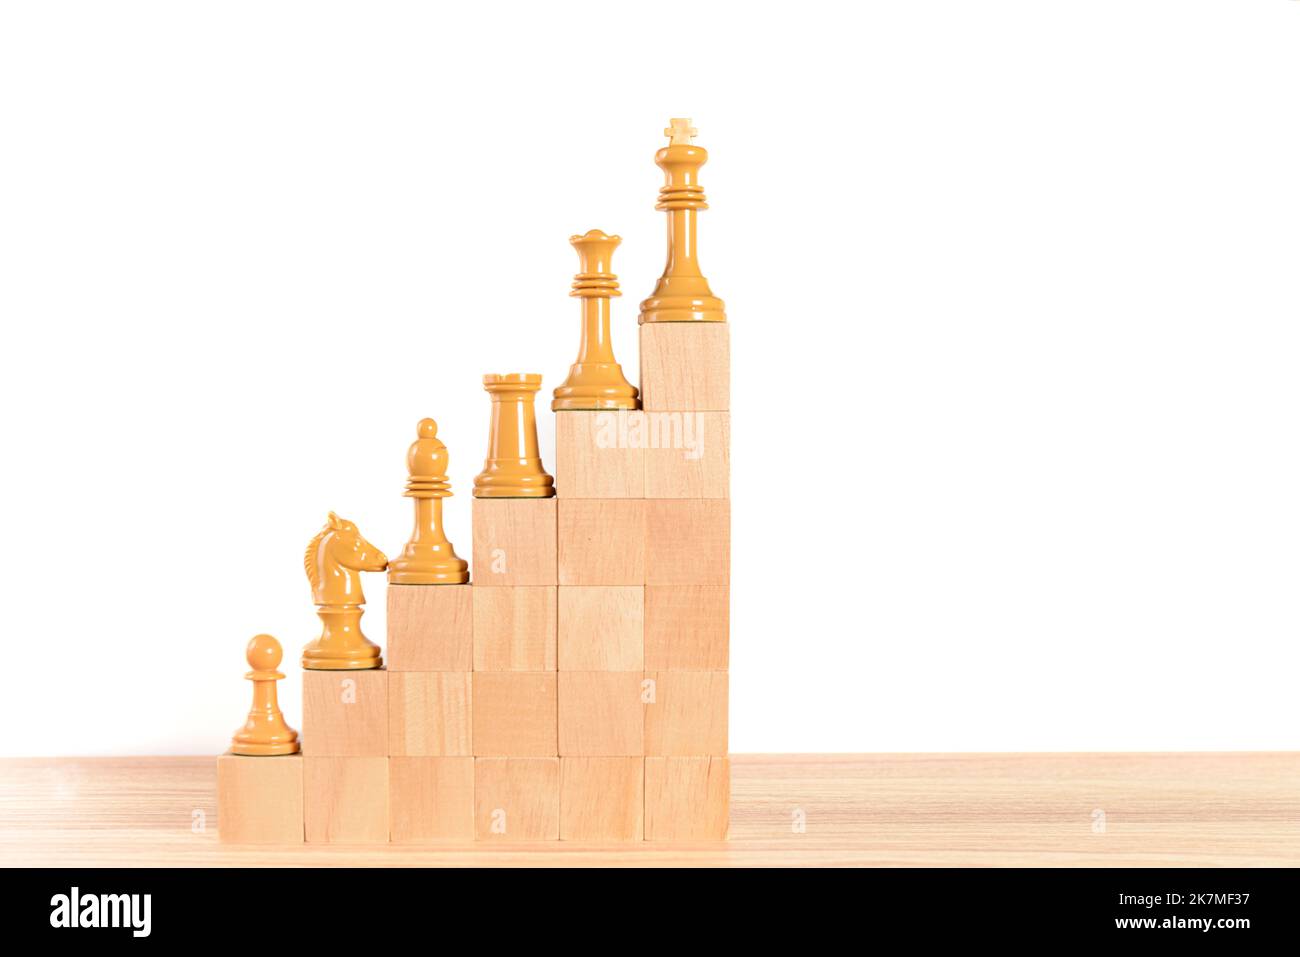 Weiße Schachfiguren auf einer hölzernen Blocktreppe, auf weißem Hintergrund. Konzept für Wachstum, Verbesserung, Führung und Erfolg. Platz zum Kopieren. Stockfoto